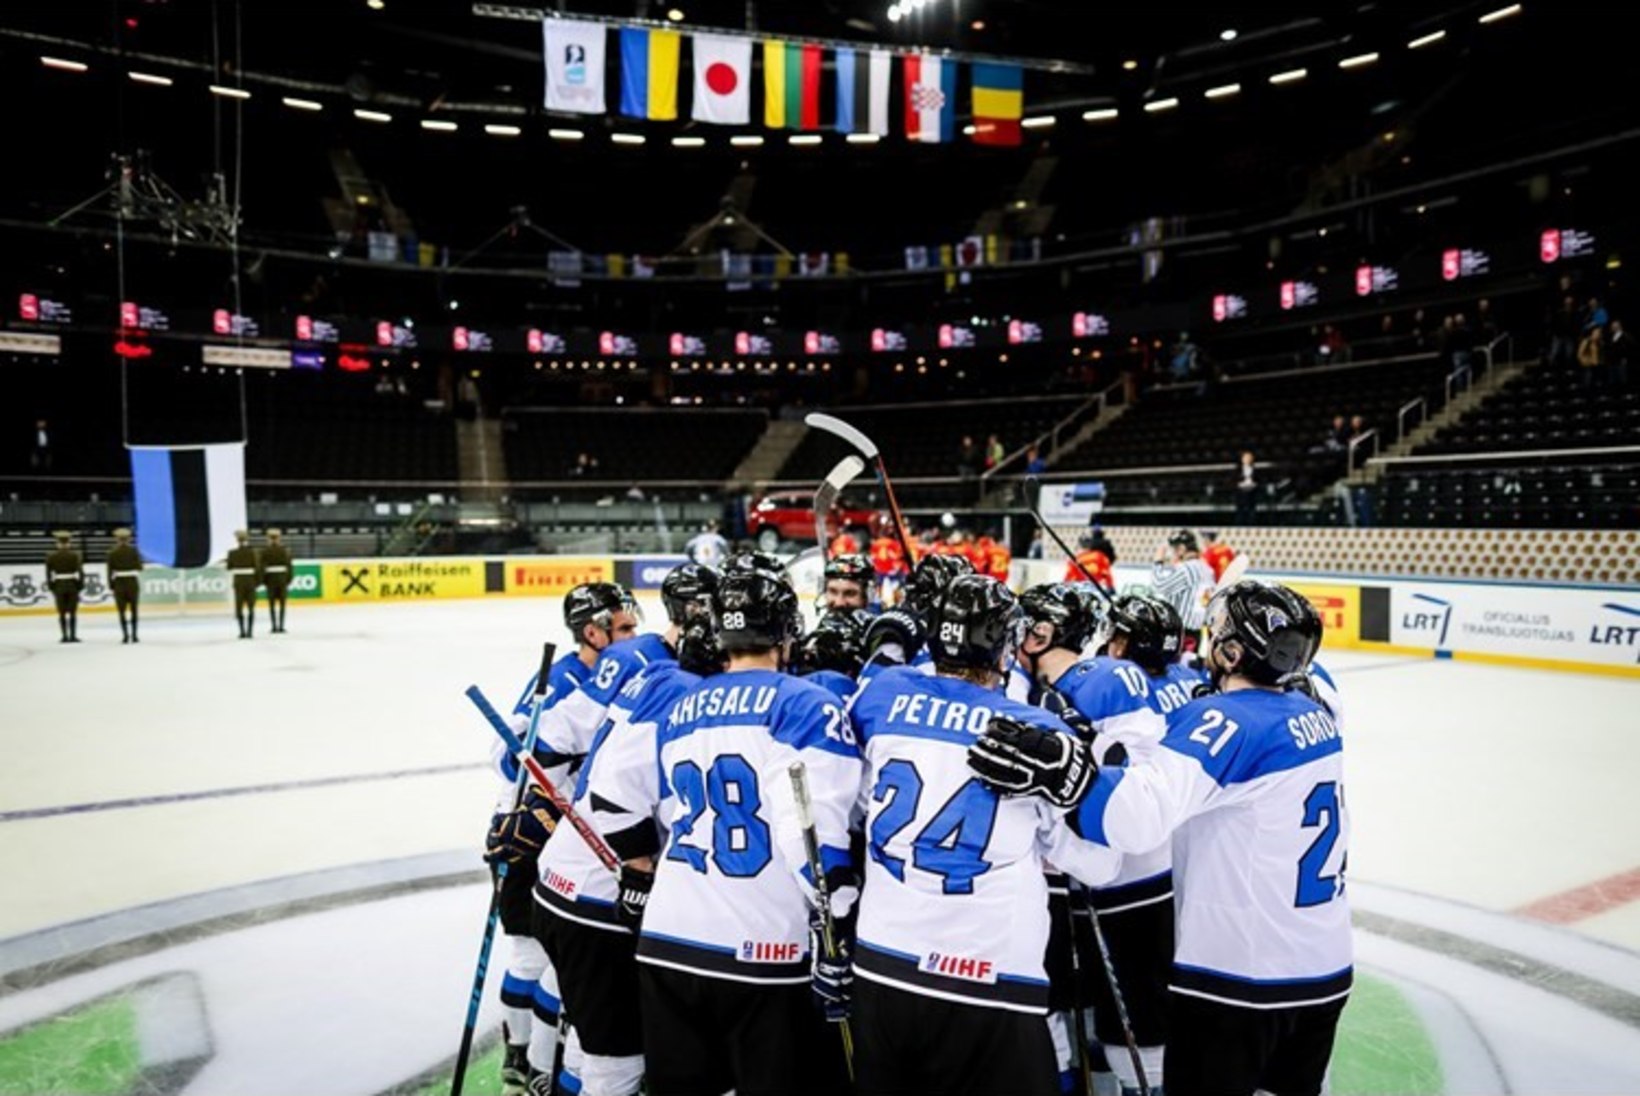 Eesti sai jäähoki MM-turniiri korraldusõiguse